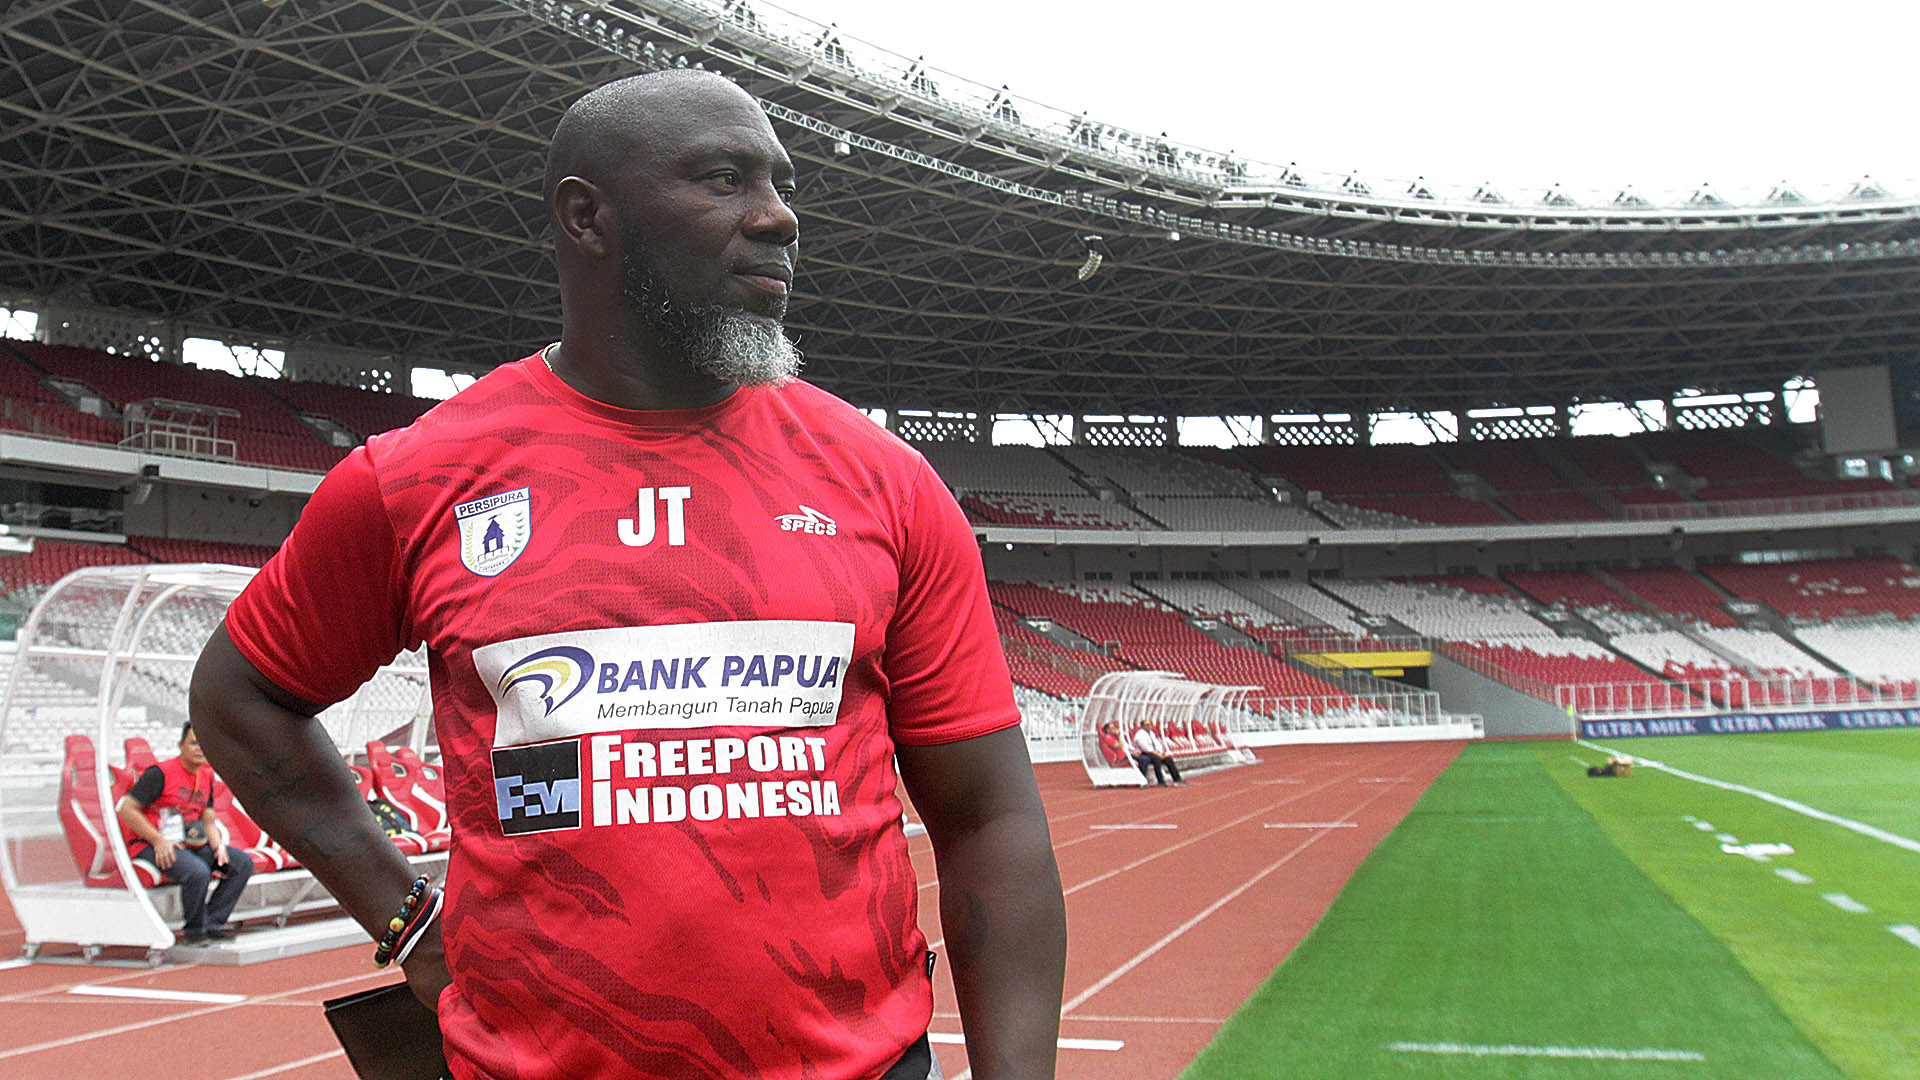 Pelatih Jawara Liga Indonesia dari 2000 sampai 2019, Jacksen F Tiago Tersukses